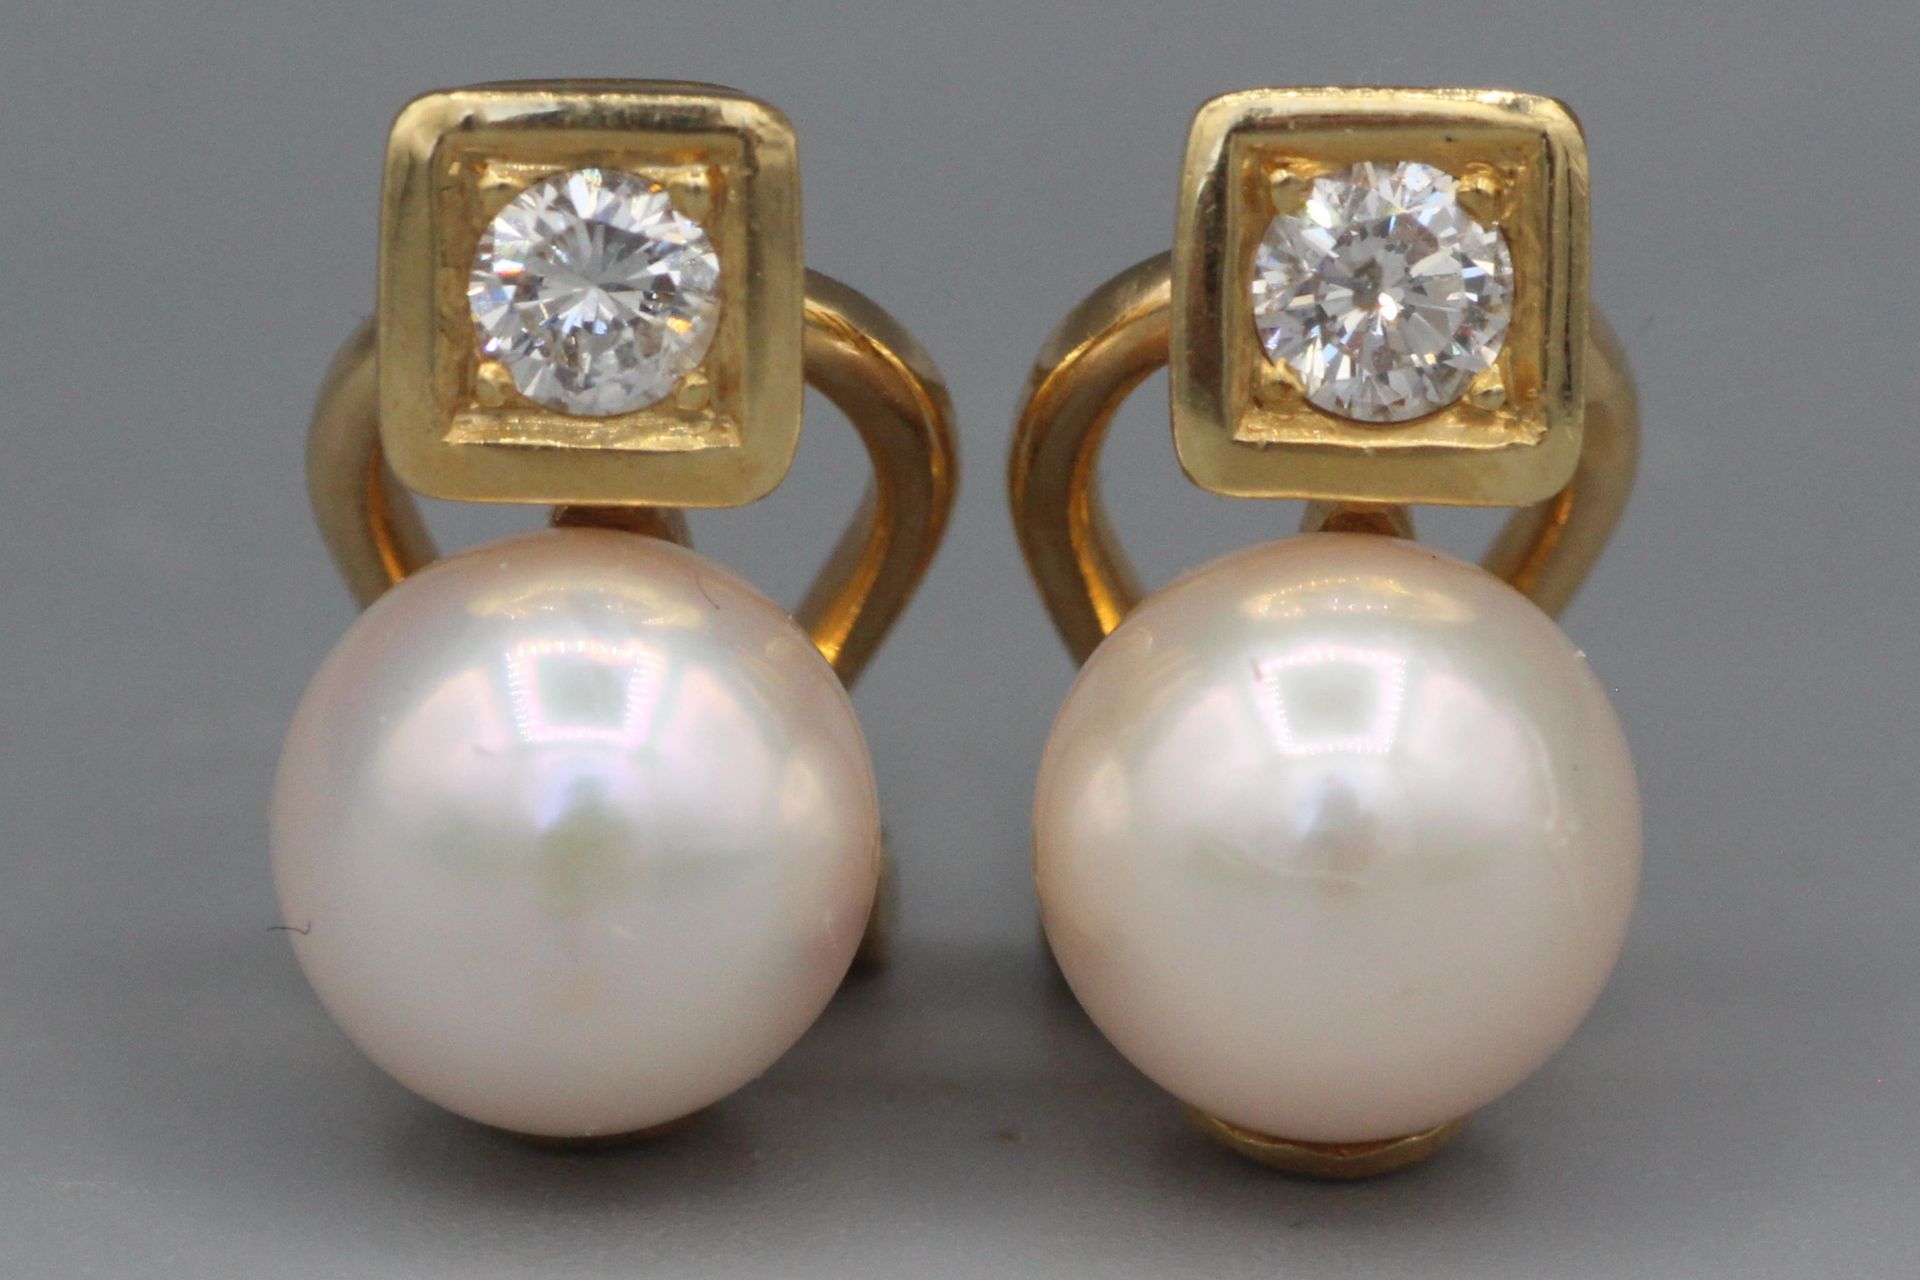 Null Coppia di orecchini in oro con diamante e perla incastonati. Peso 7,7 g